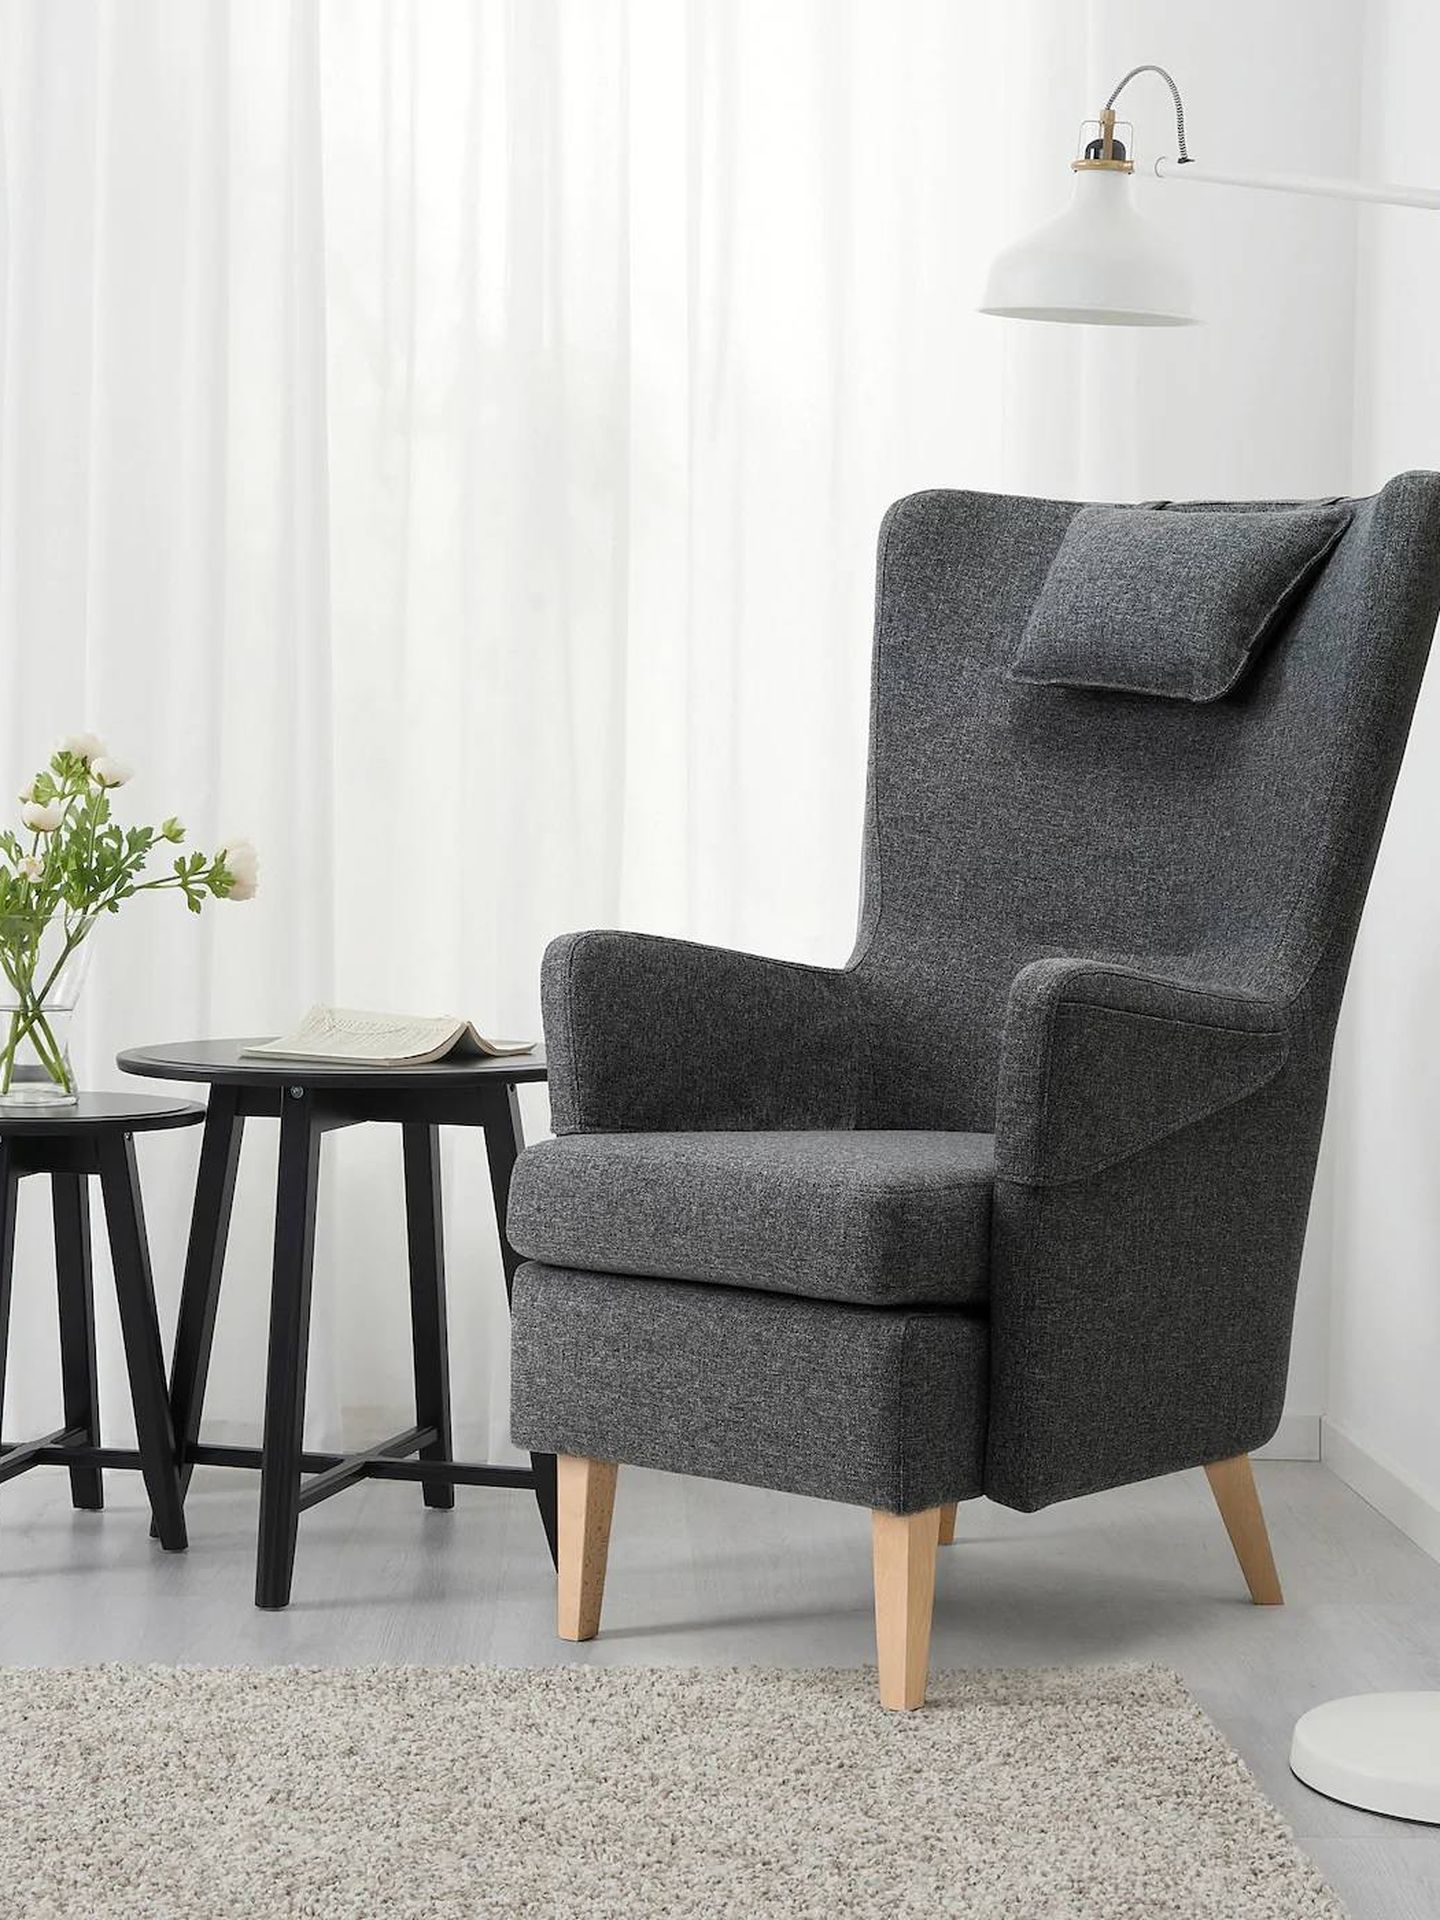 El sillón de Ikea que tu salón necesita. (Cortesía)